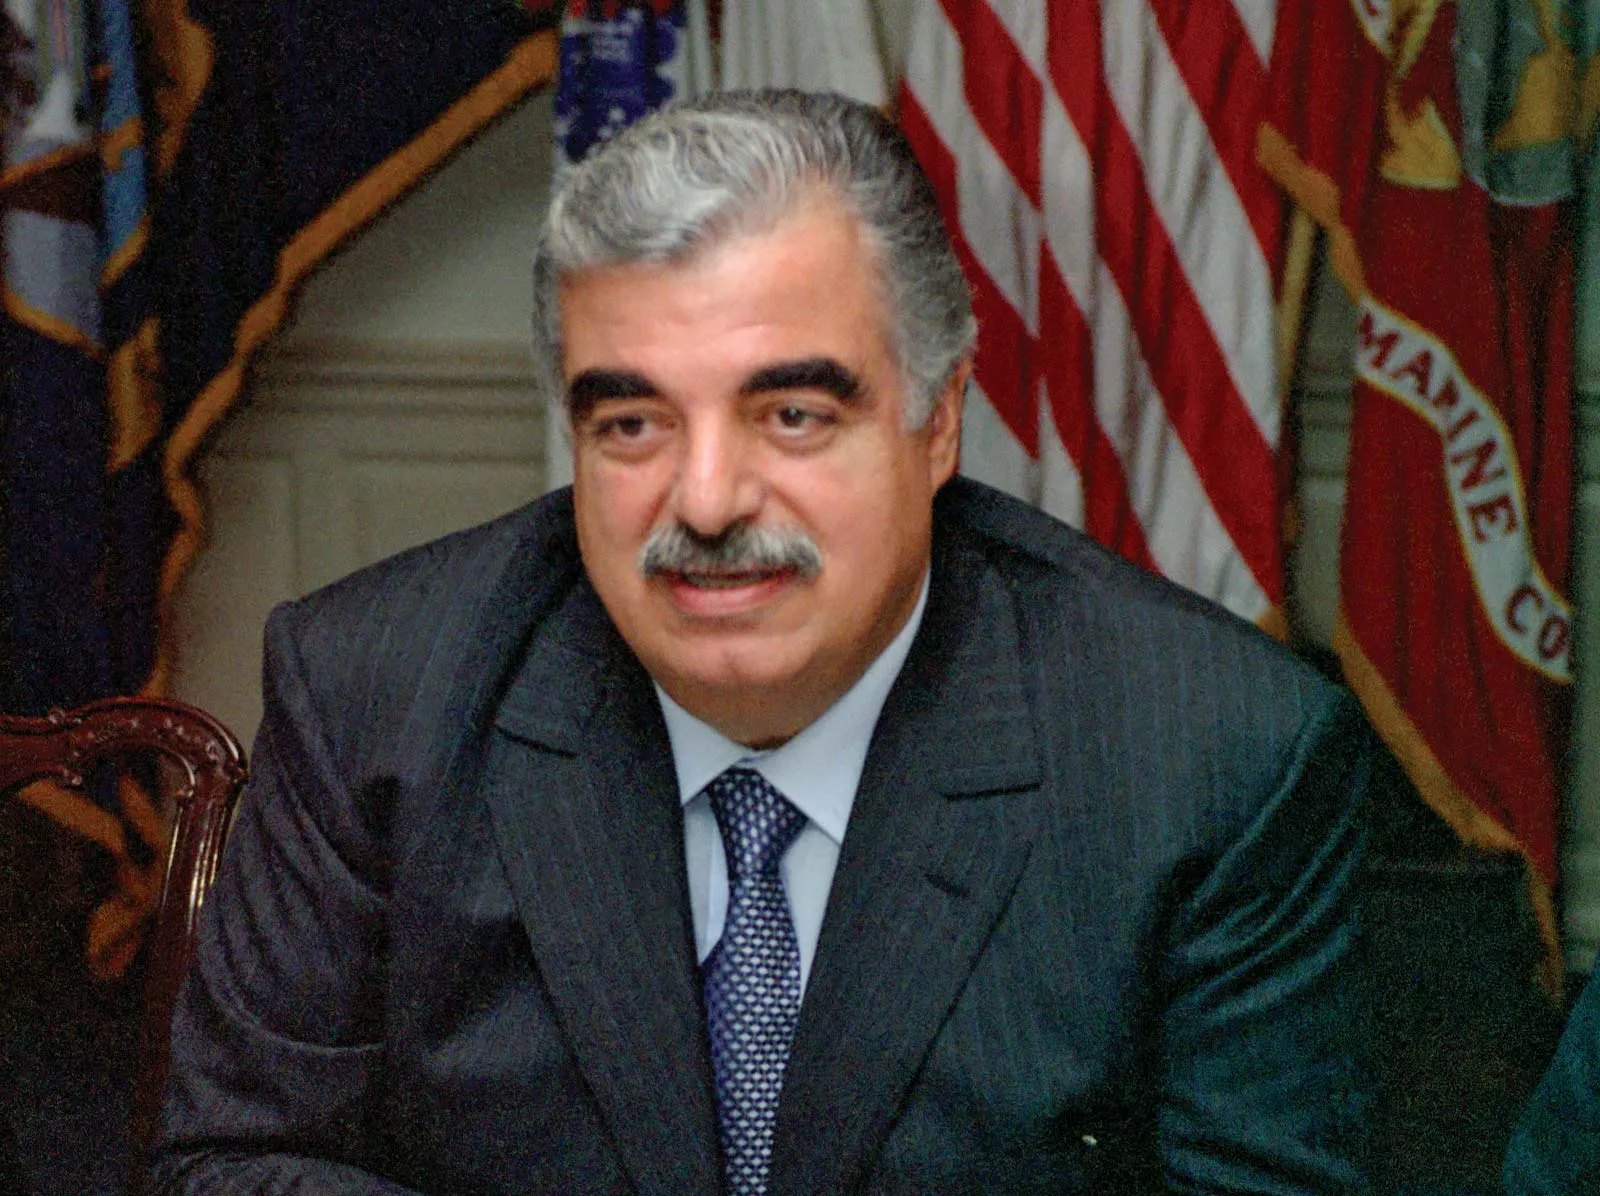 2005 Former Lebanese Prime Minister Rafik Hariri is assassinated